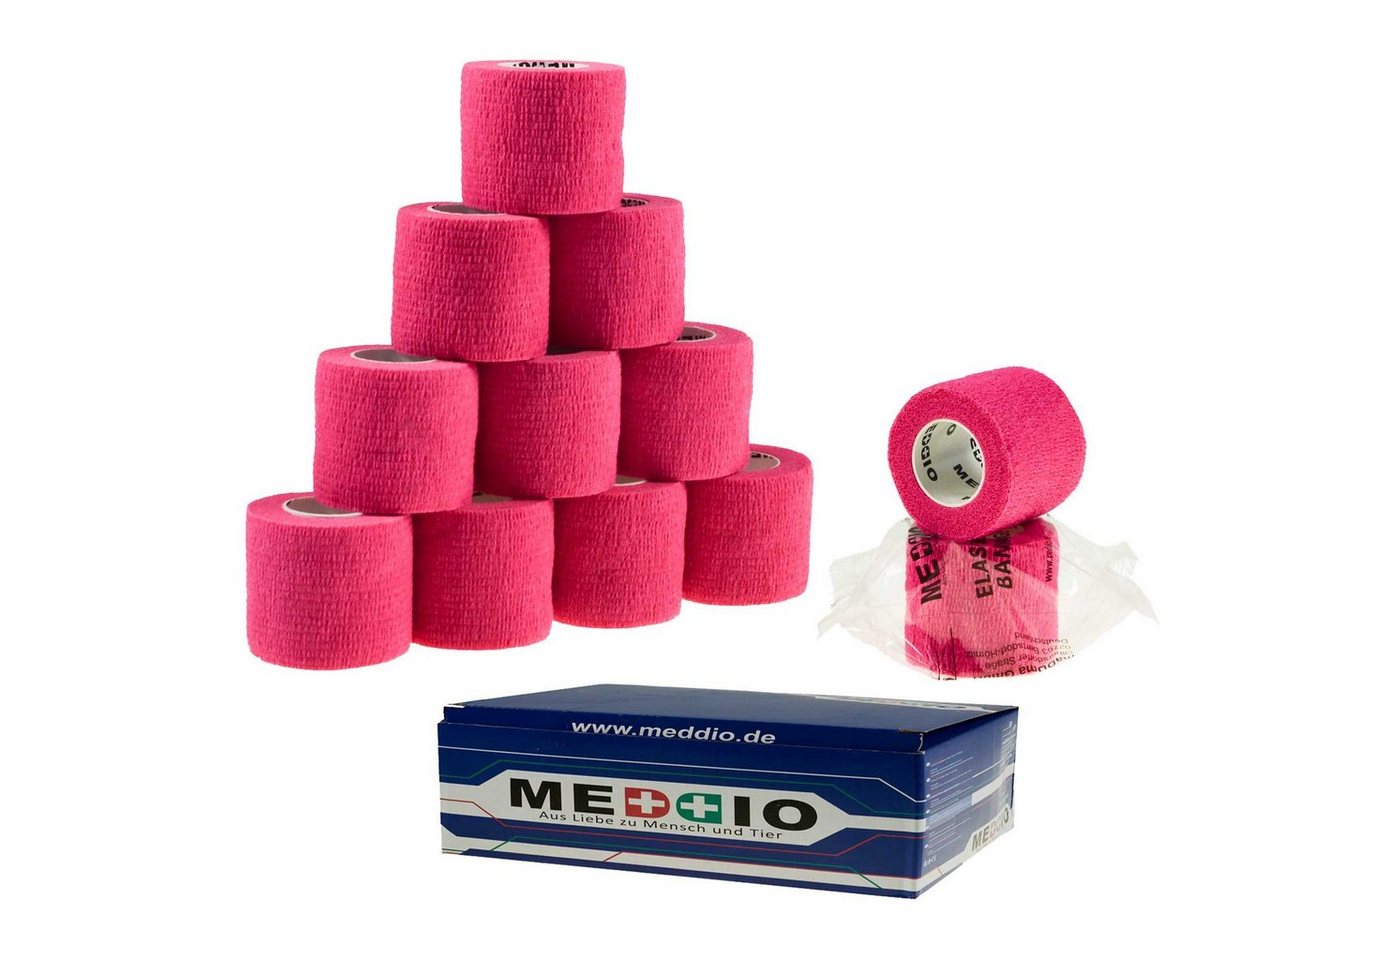 meDDio Pferdebandage 12 Haftbandagen Größe+Farbe wählbar, pink energy von meDDio